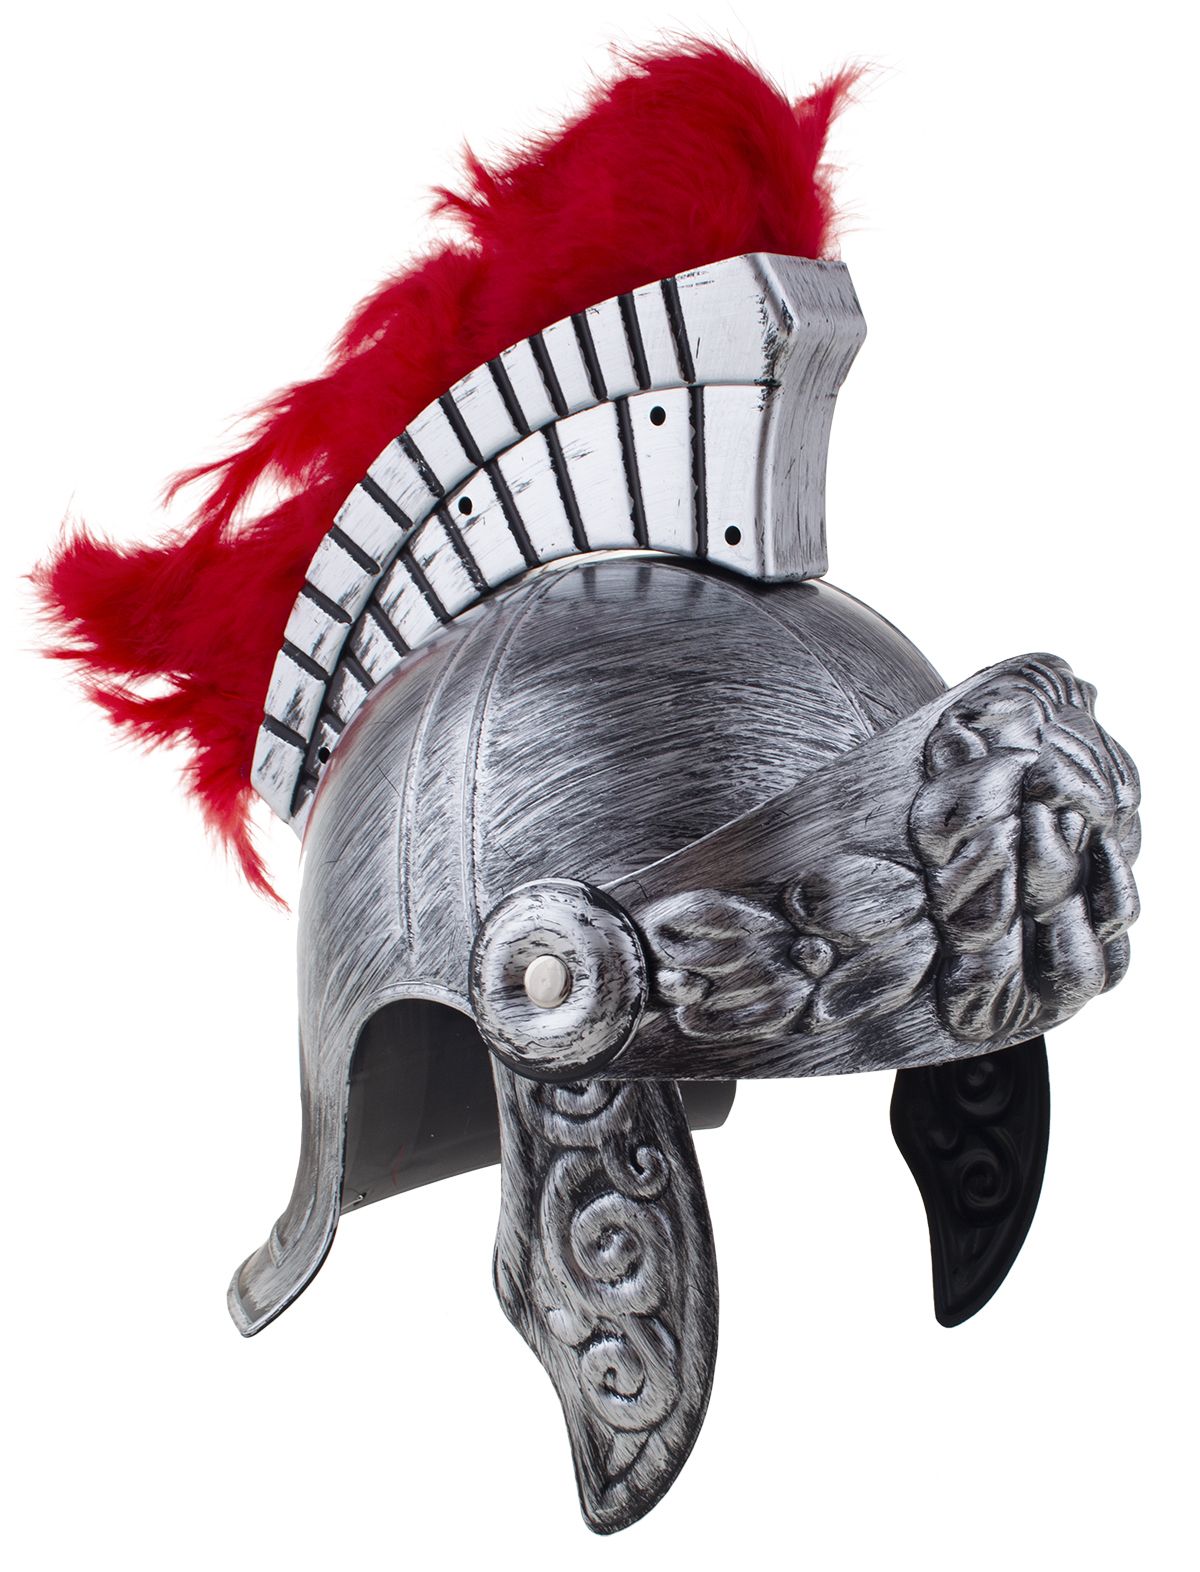 verkoop - attributen - Hoeden-diadeem - Romeinse helm zilver met rode pluimen